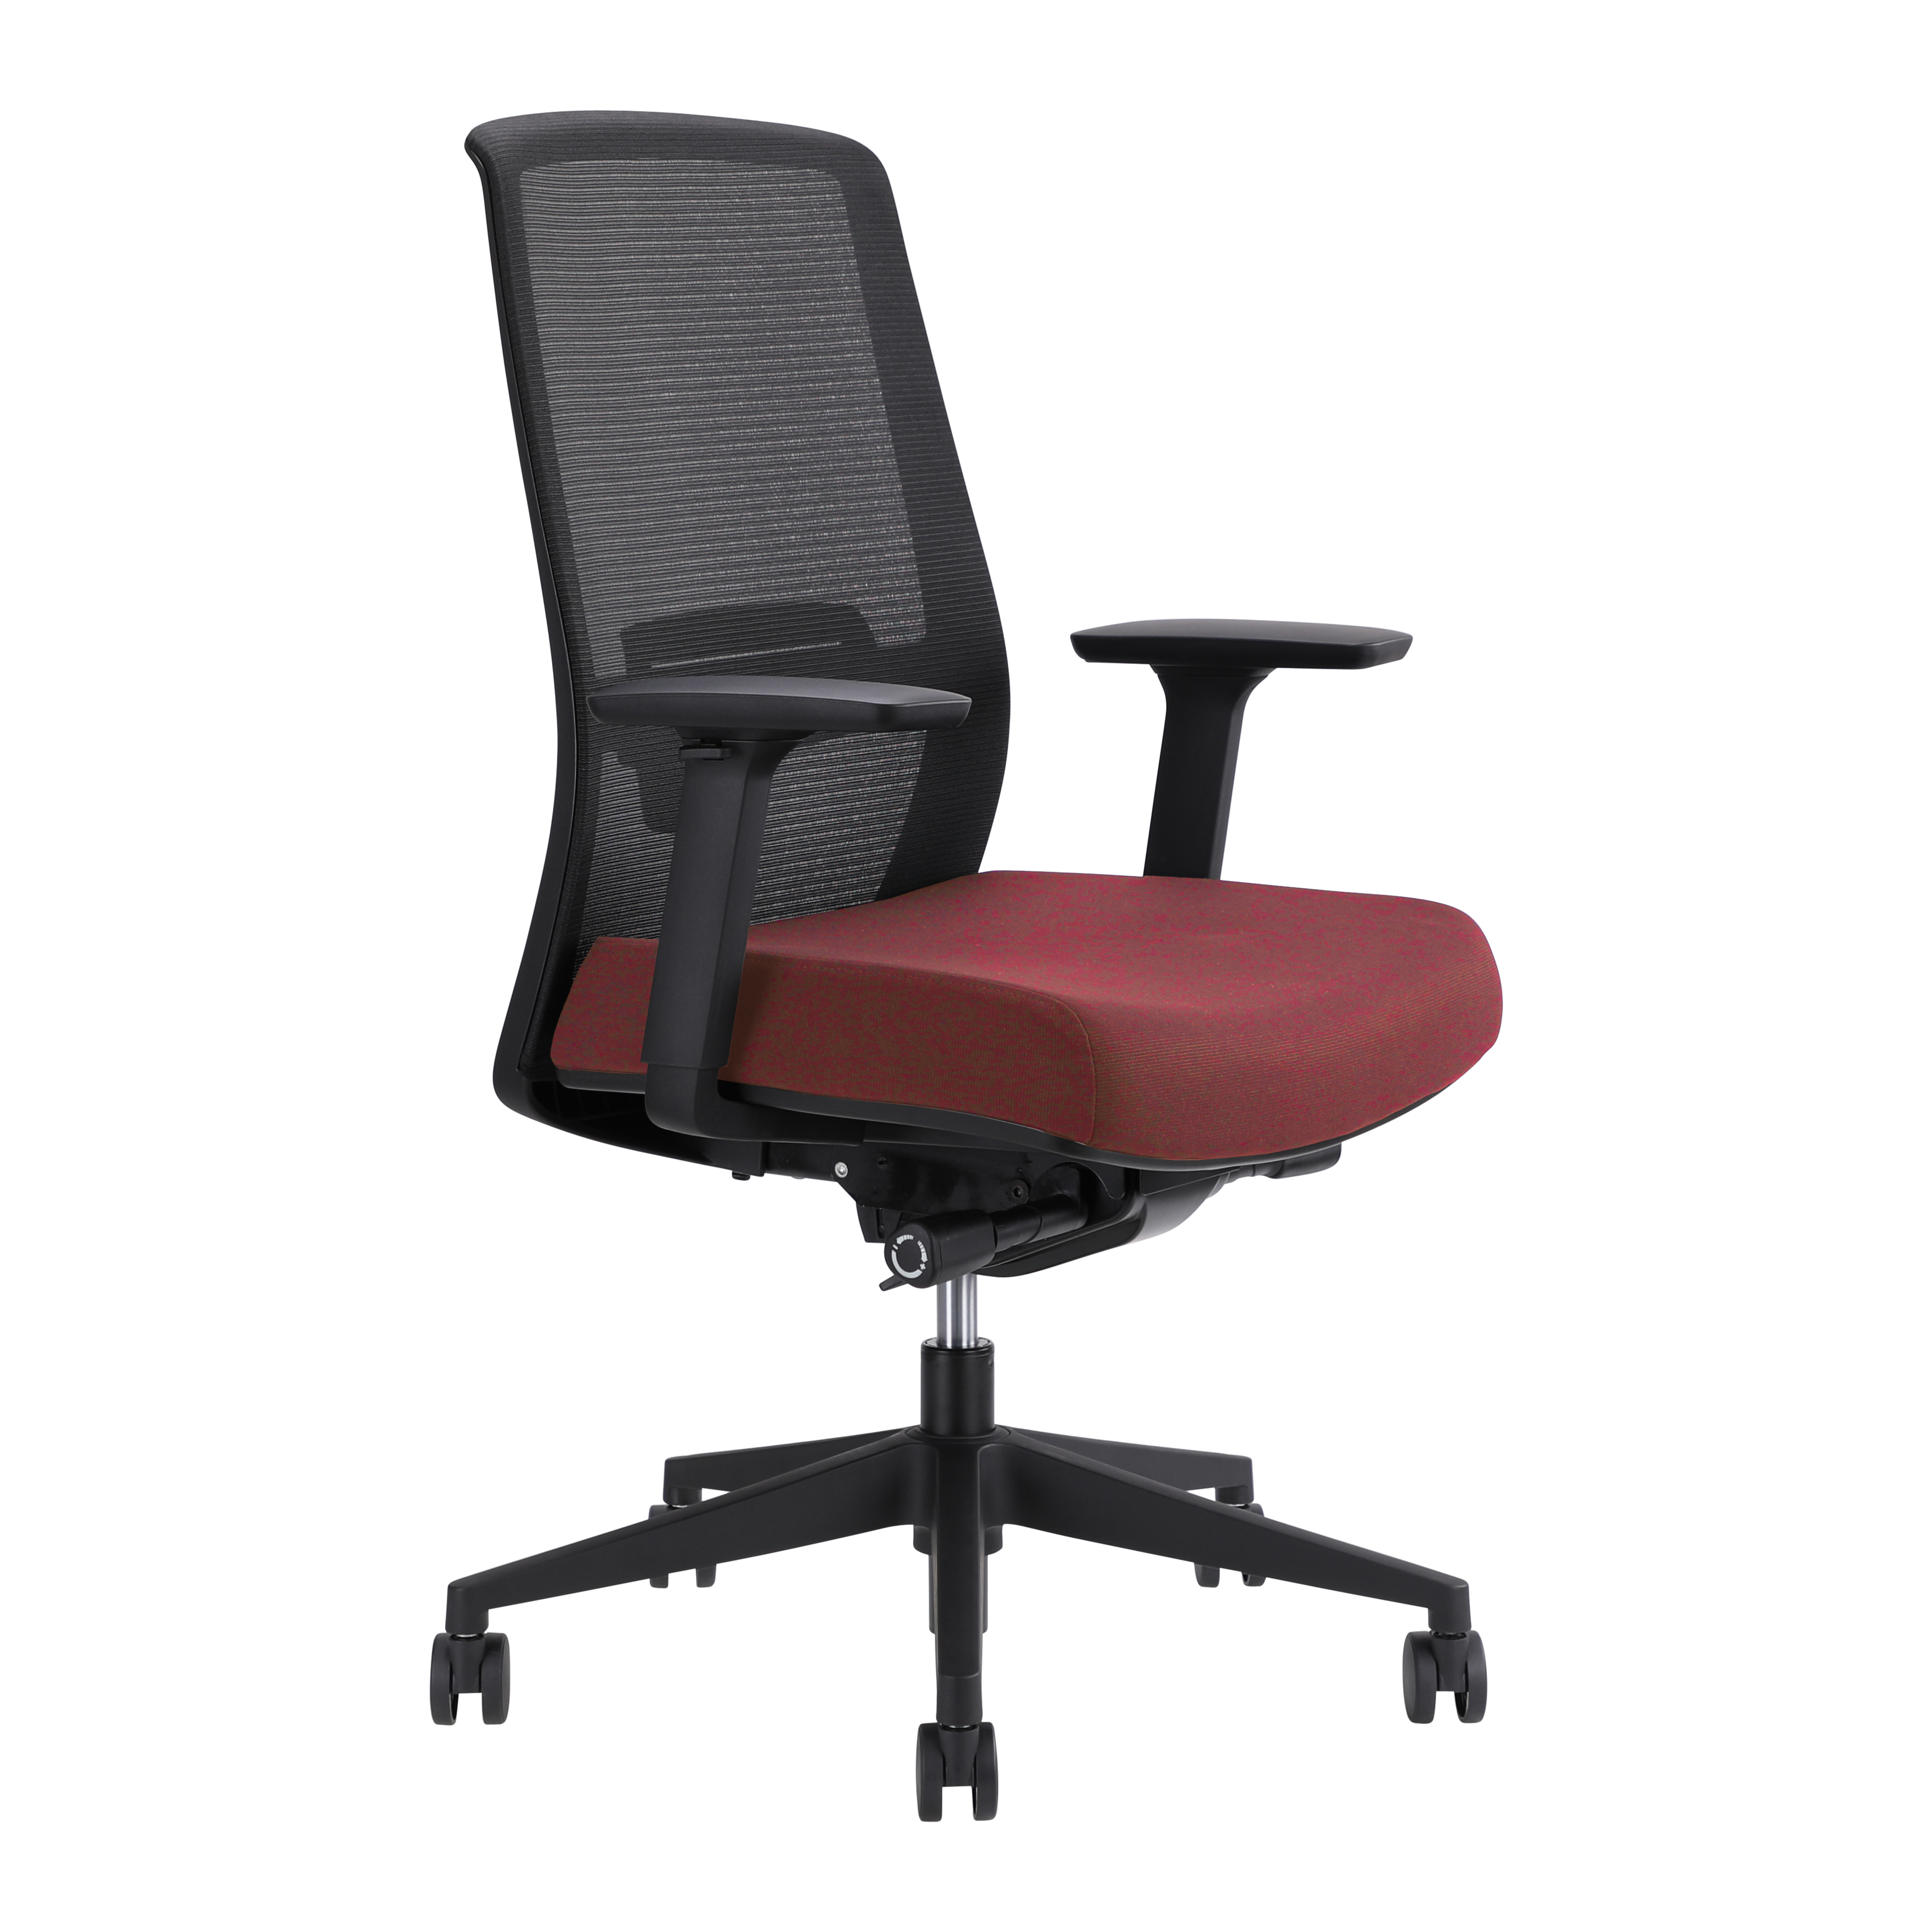 Jirra side control synchro task chair